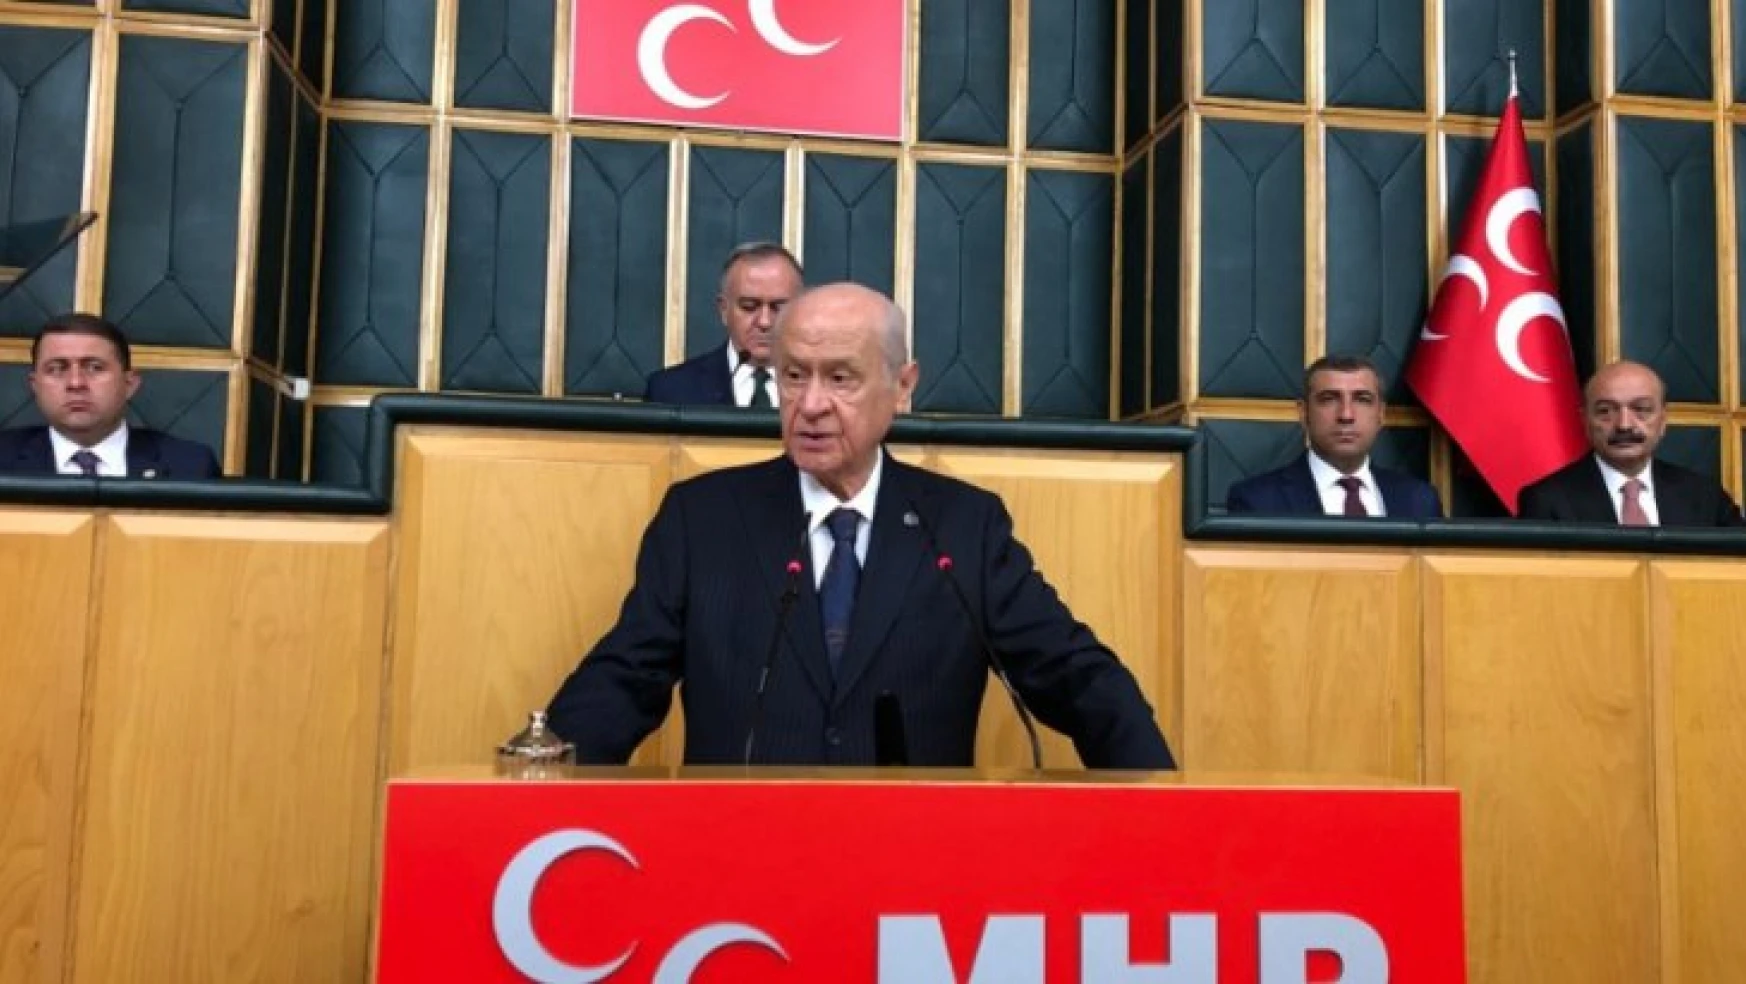 MHP Lideri Bahçeli: Polise saldıran milletvekilinin Meclis'te yeri olamaz